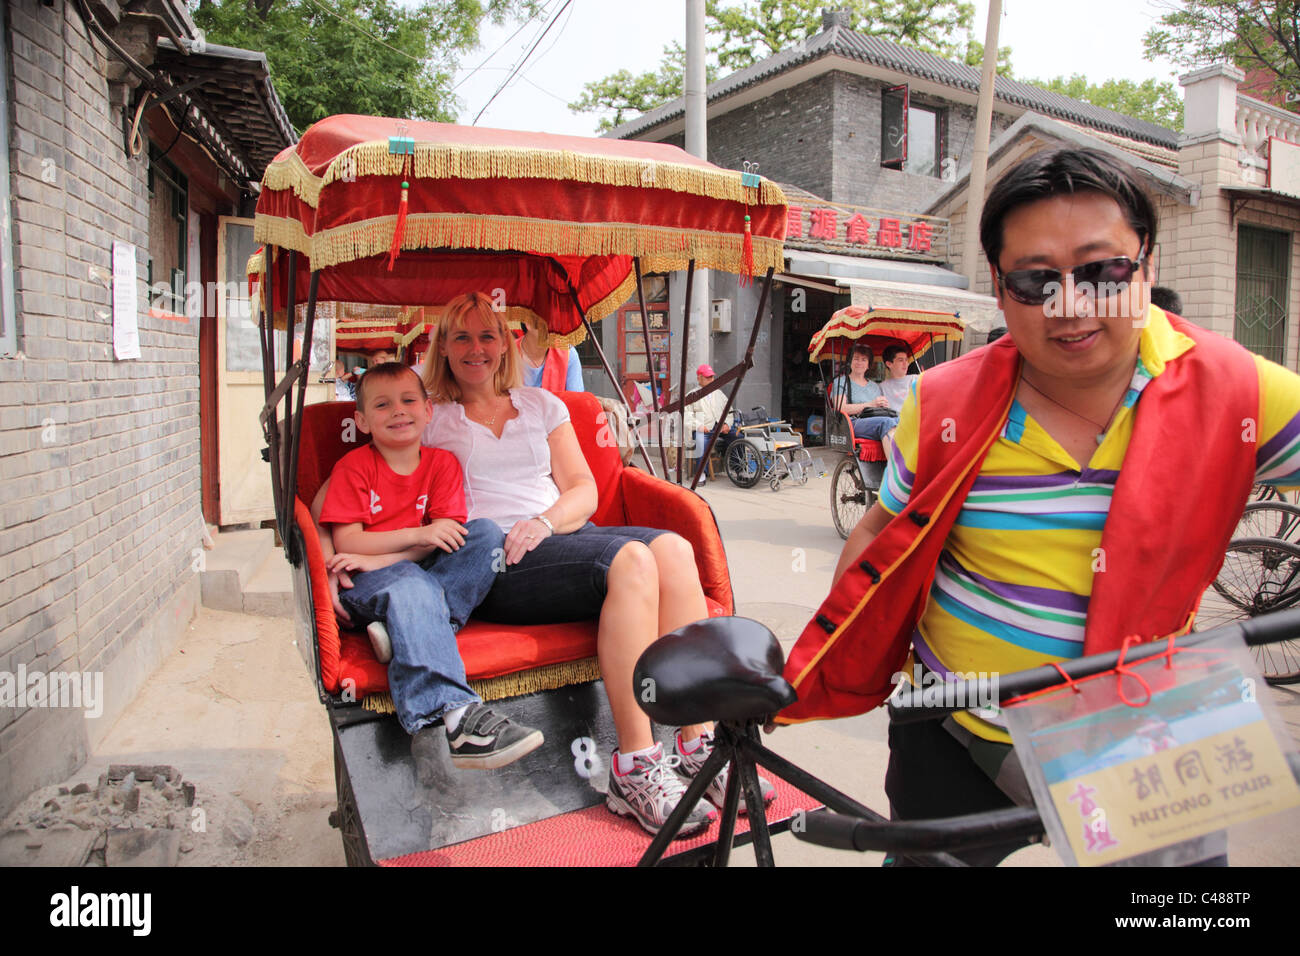 Rickshaw ride, Beijing China Stock Photo